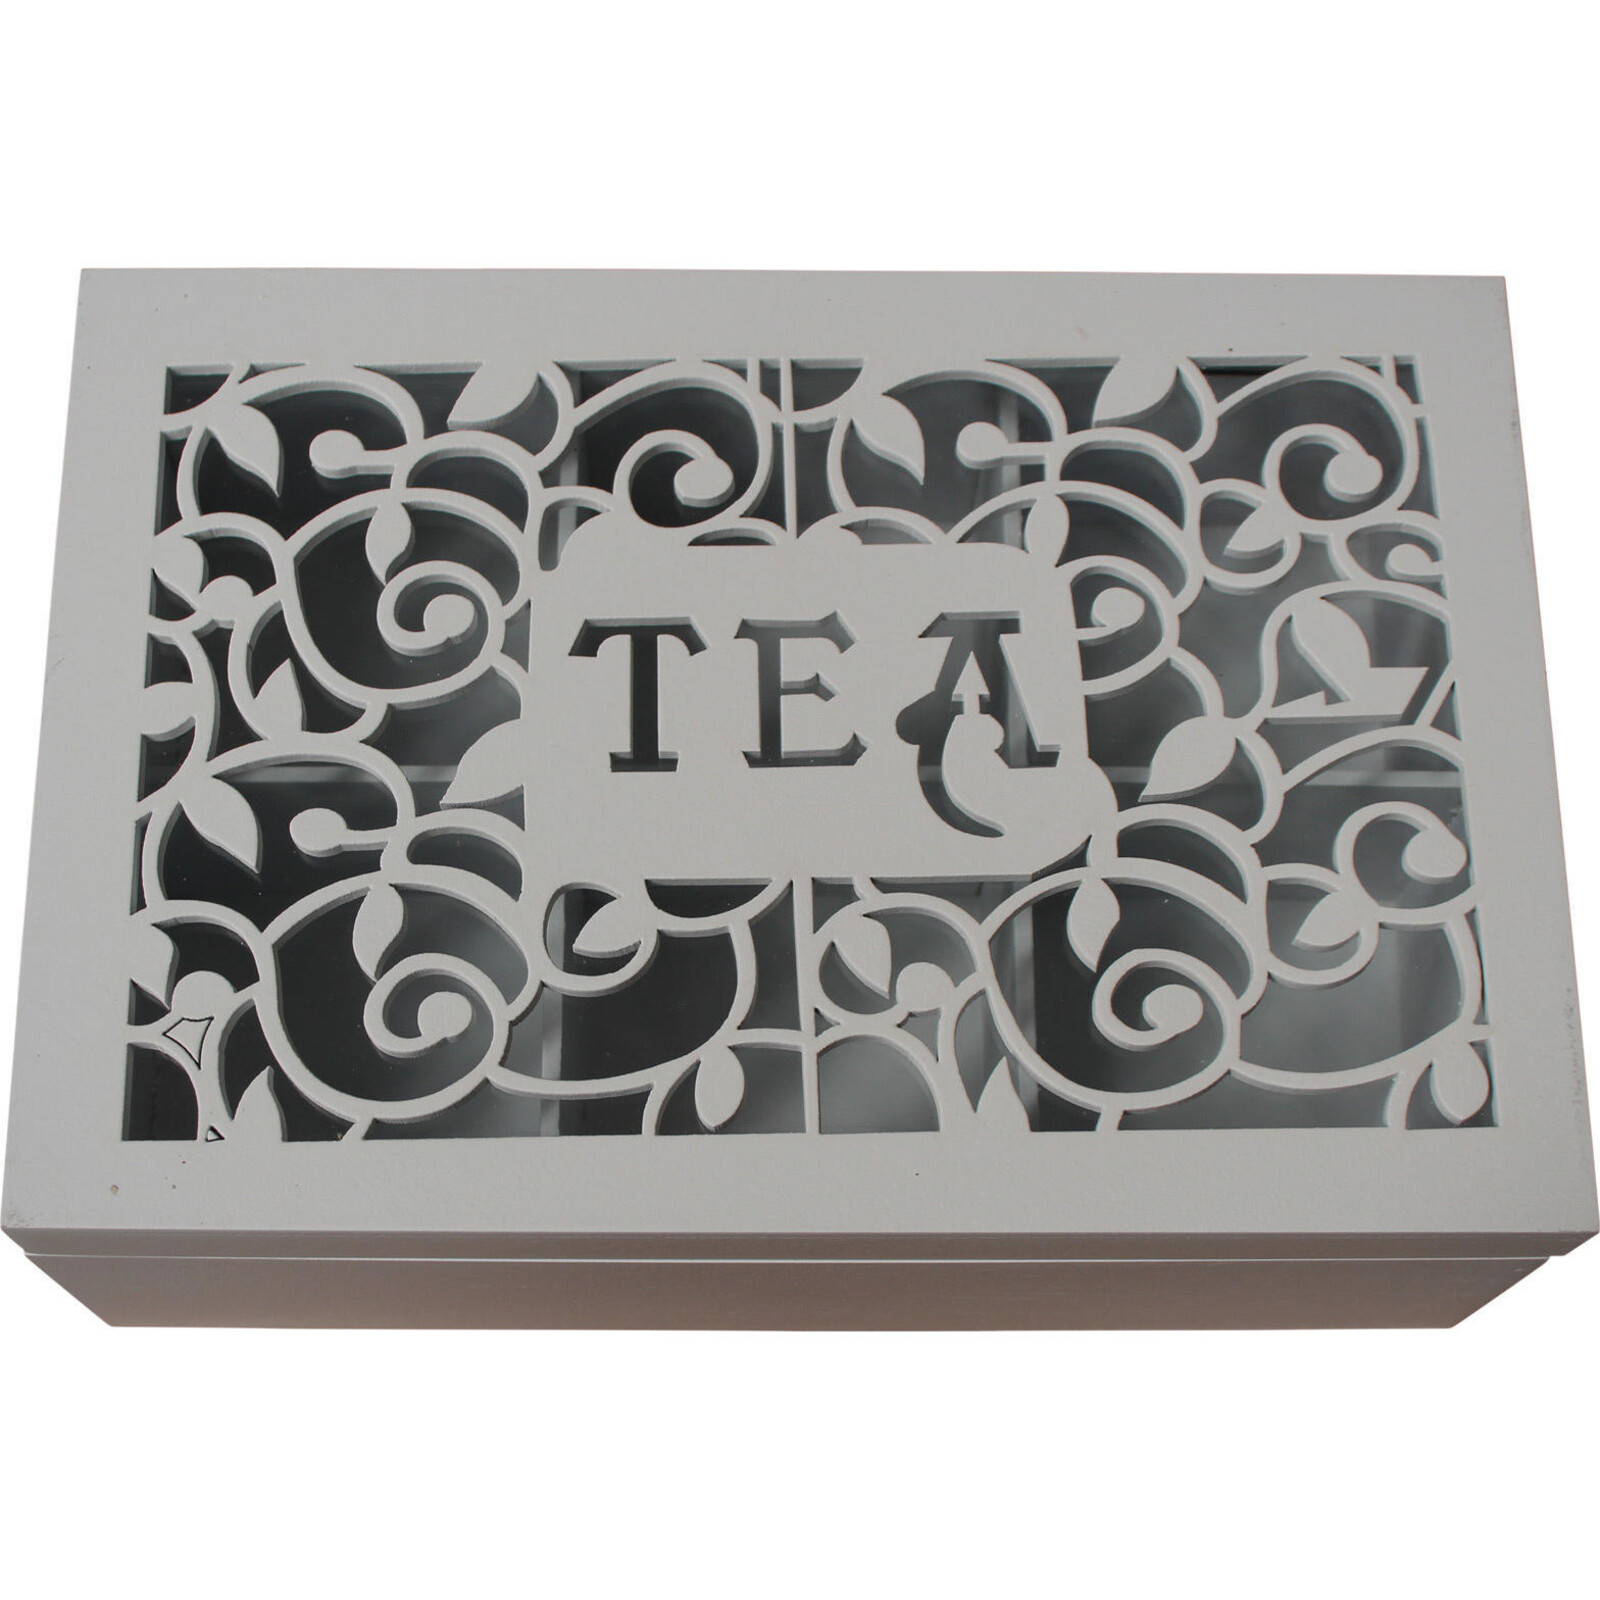 Box Tea Ornate White